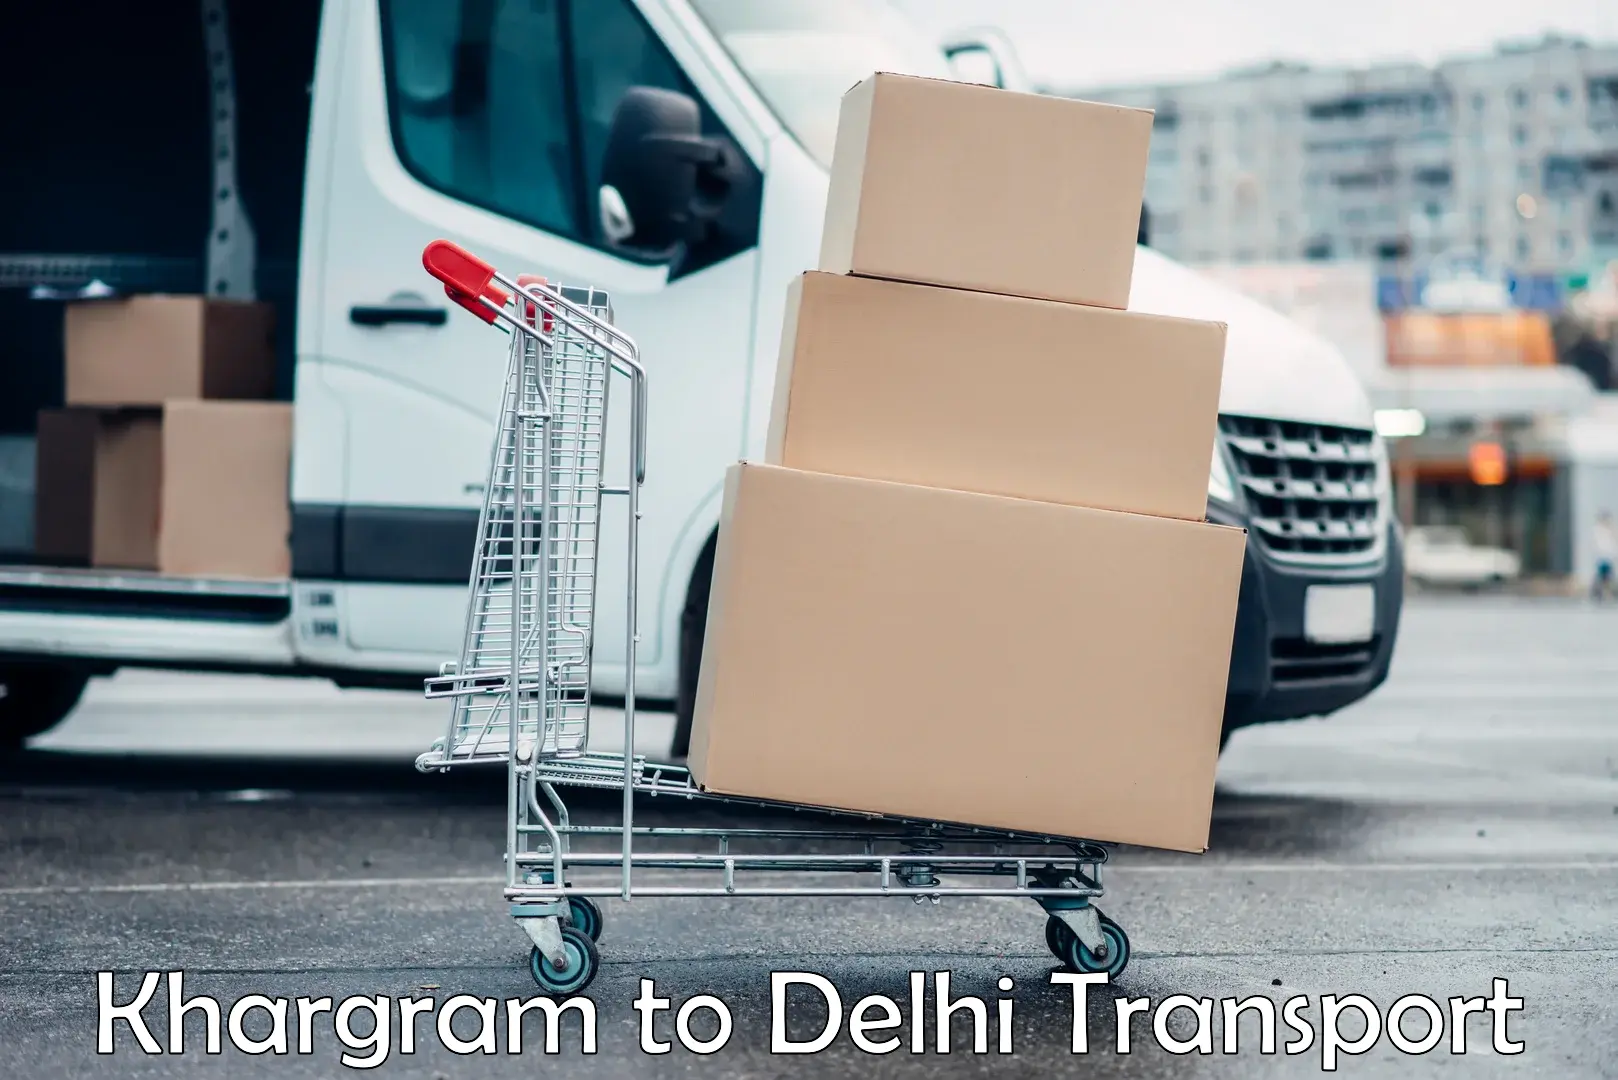 Bike shipping service Khargram to East Delhi